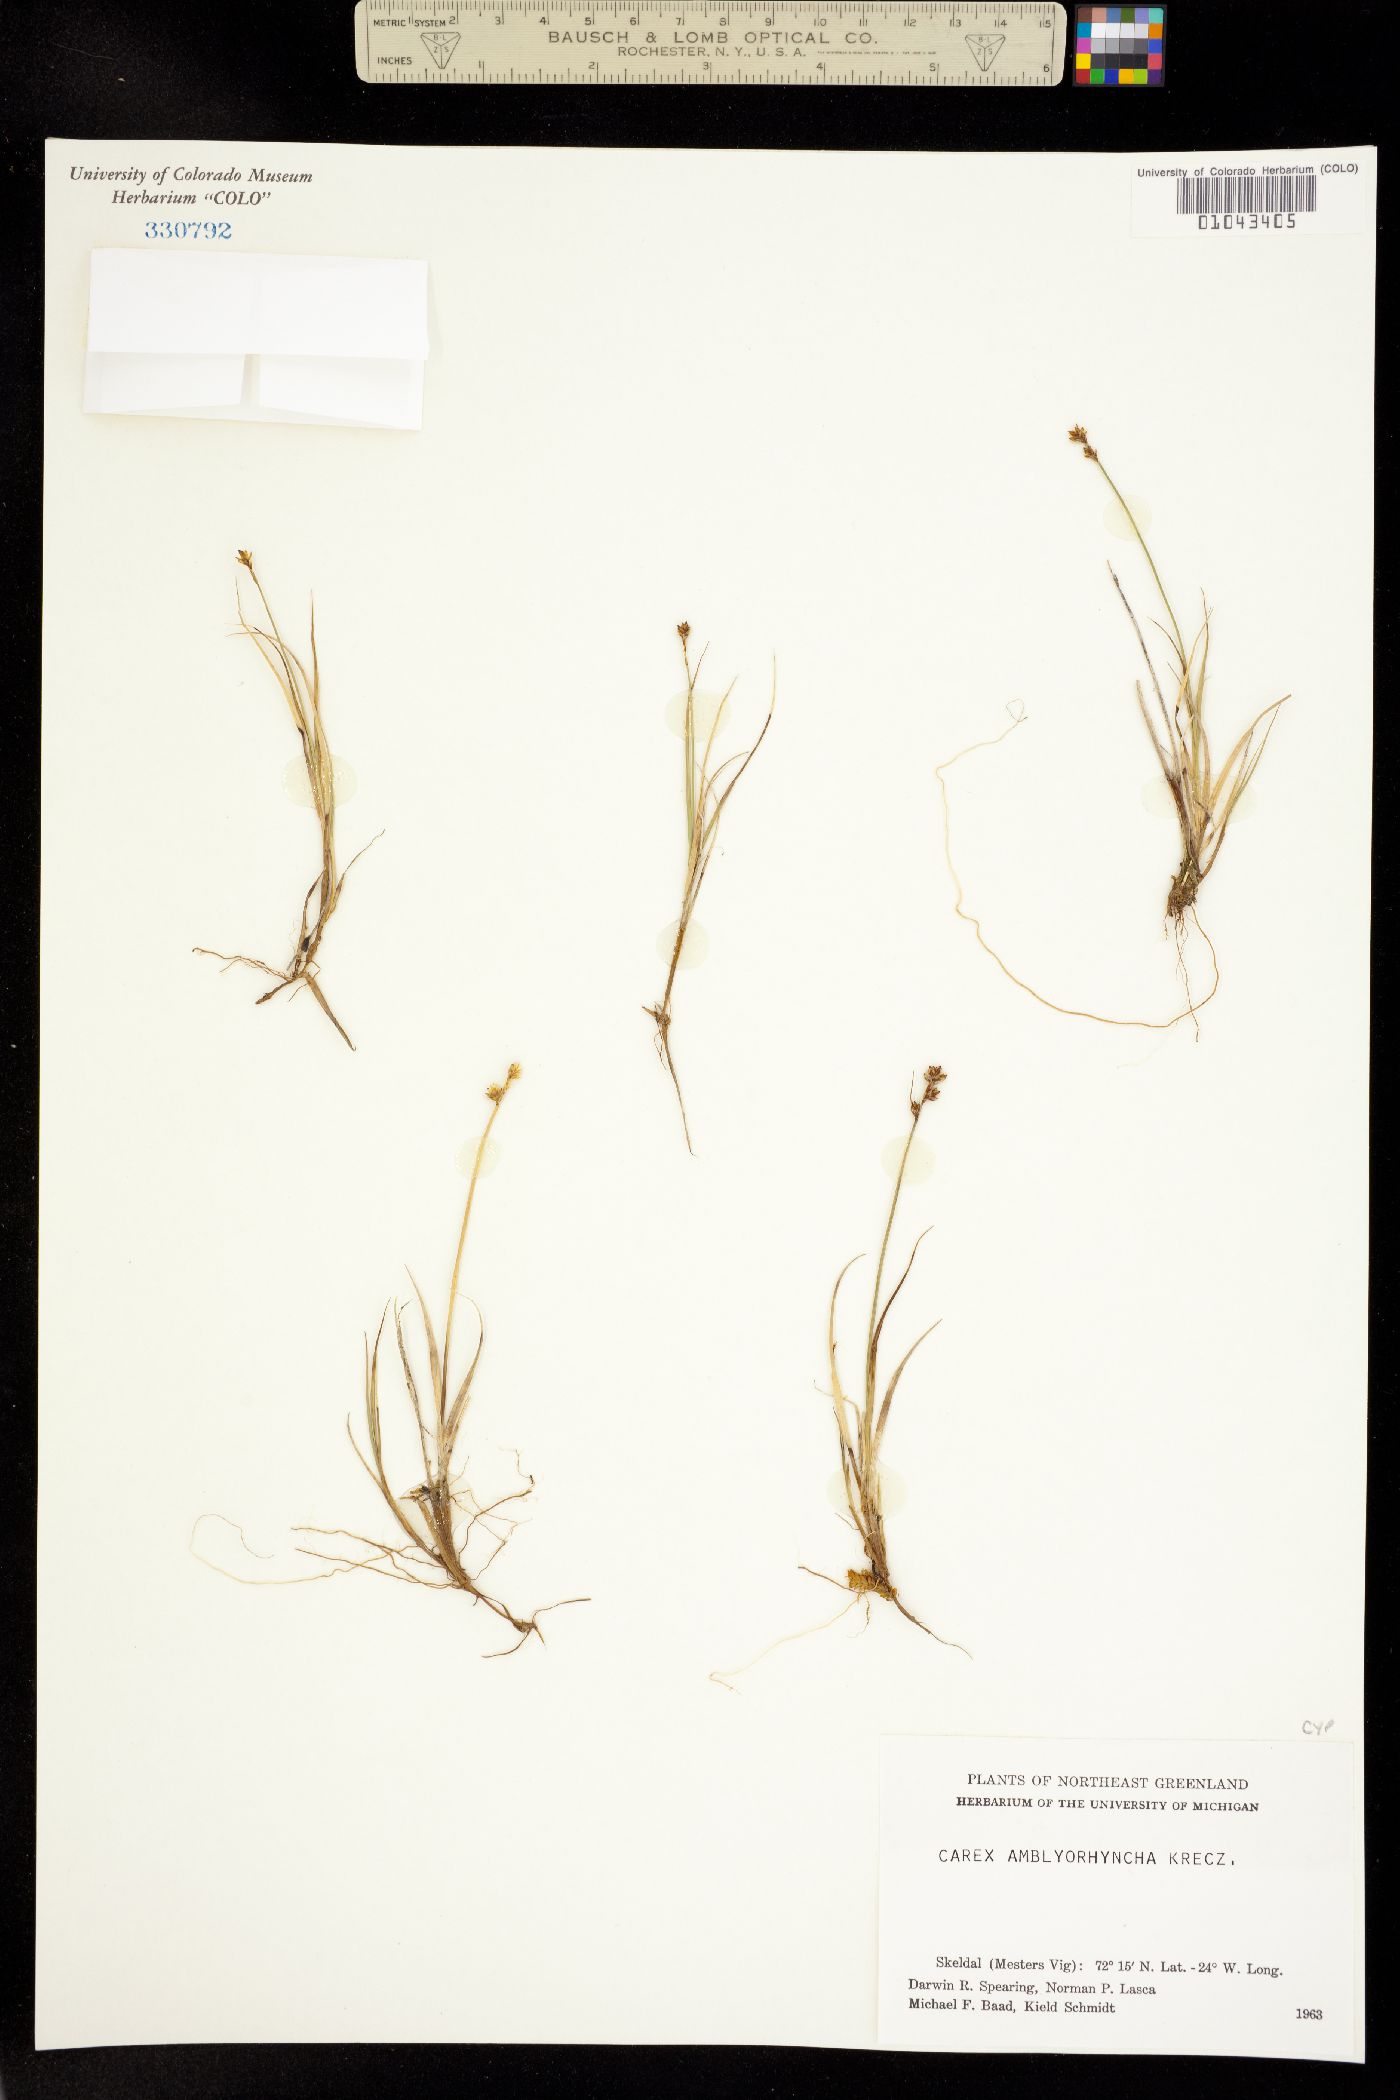 Carex marina image